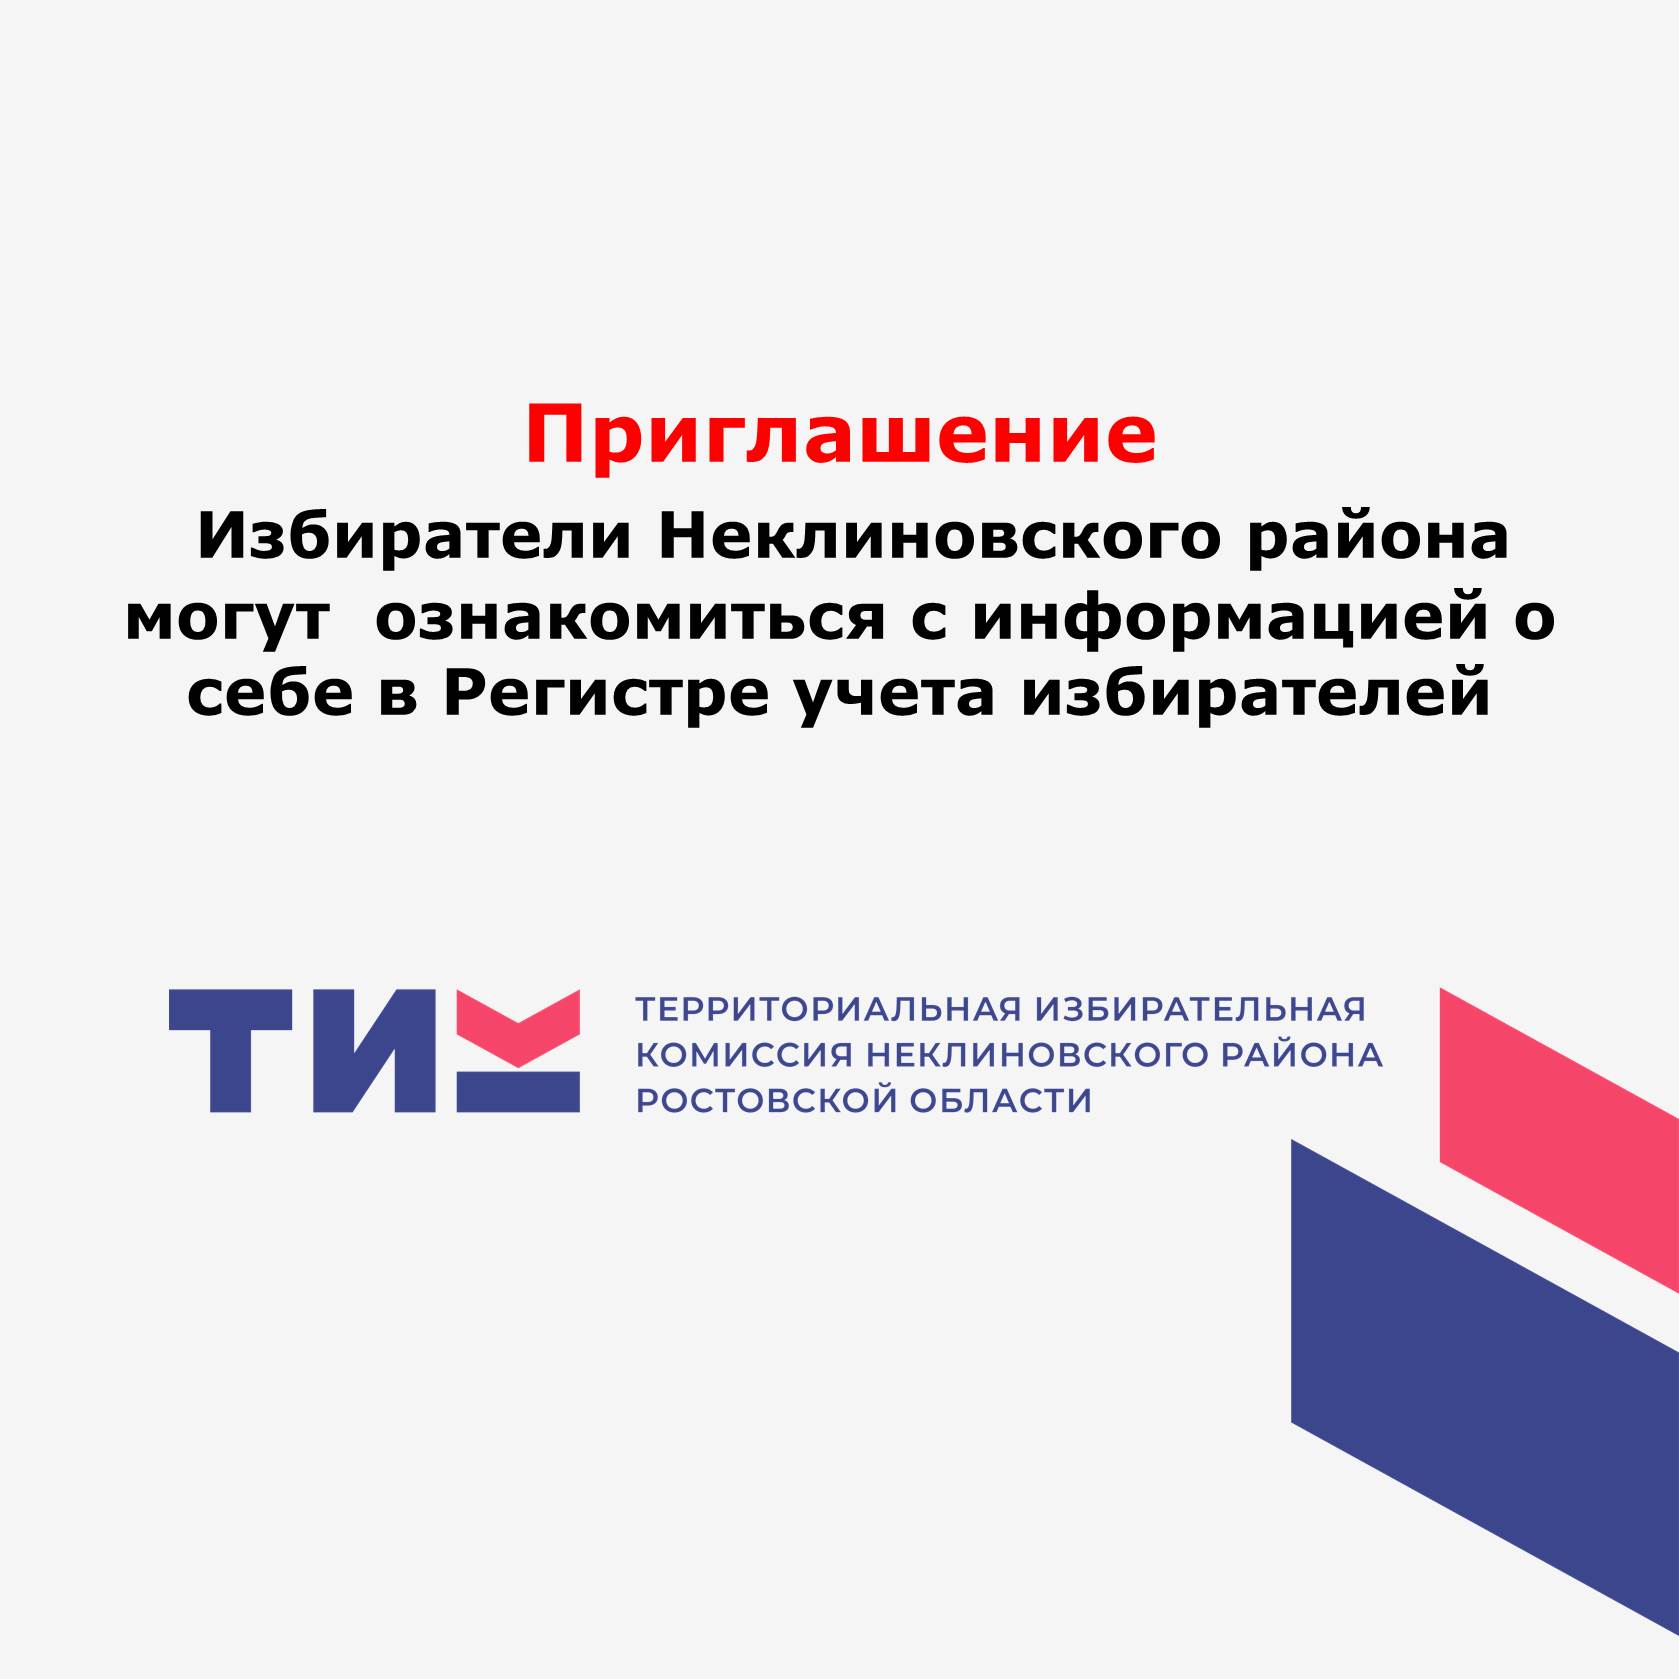 Избиратели Неклиновского района могут ознакомиться с информацией о себе в Регистре учета избирателей